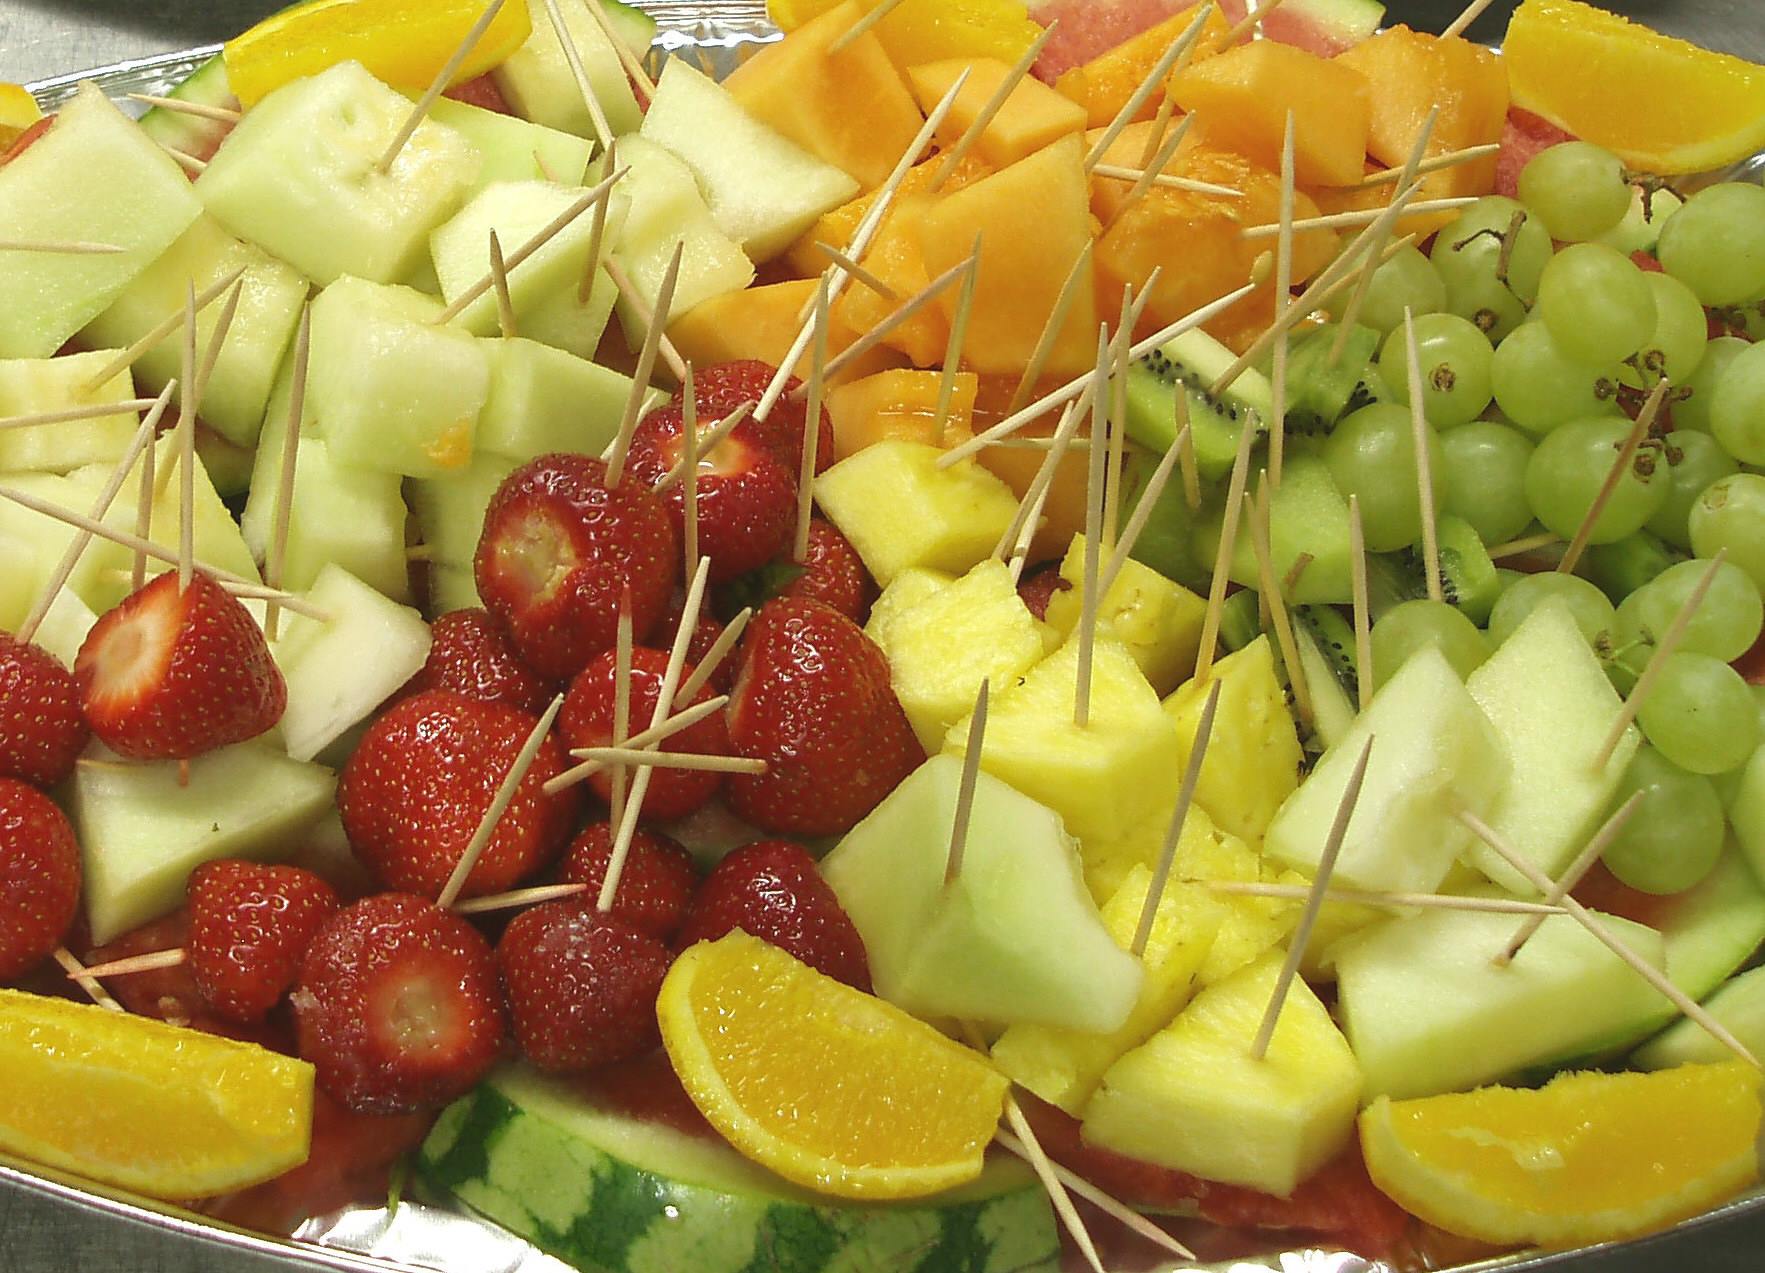 A platter of fruit